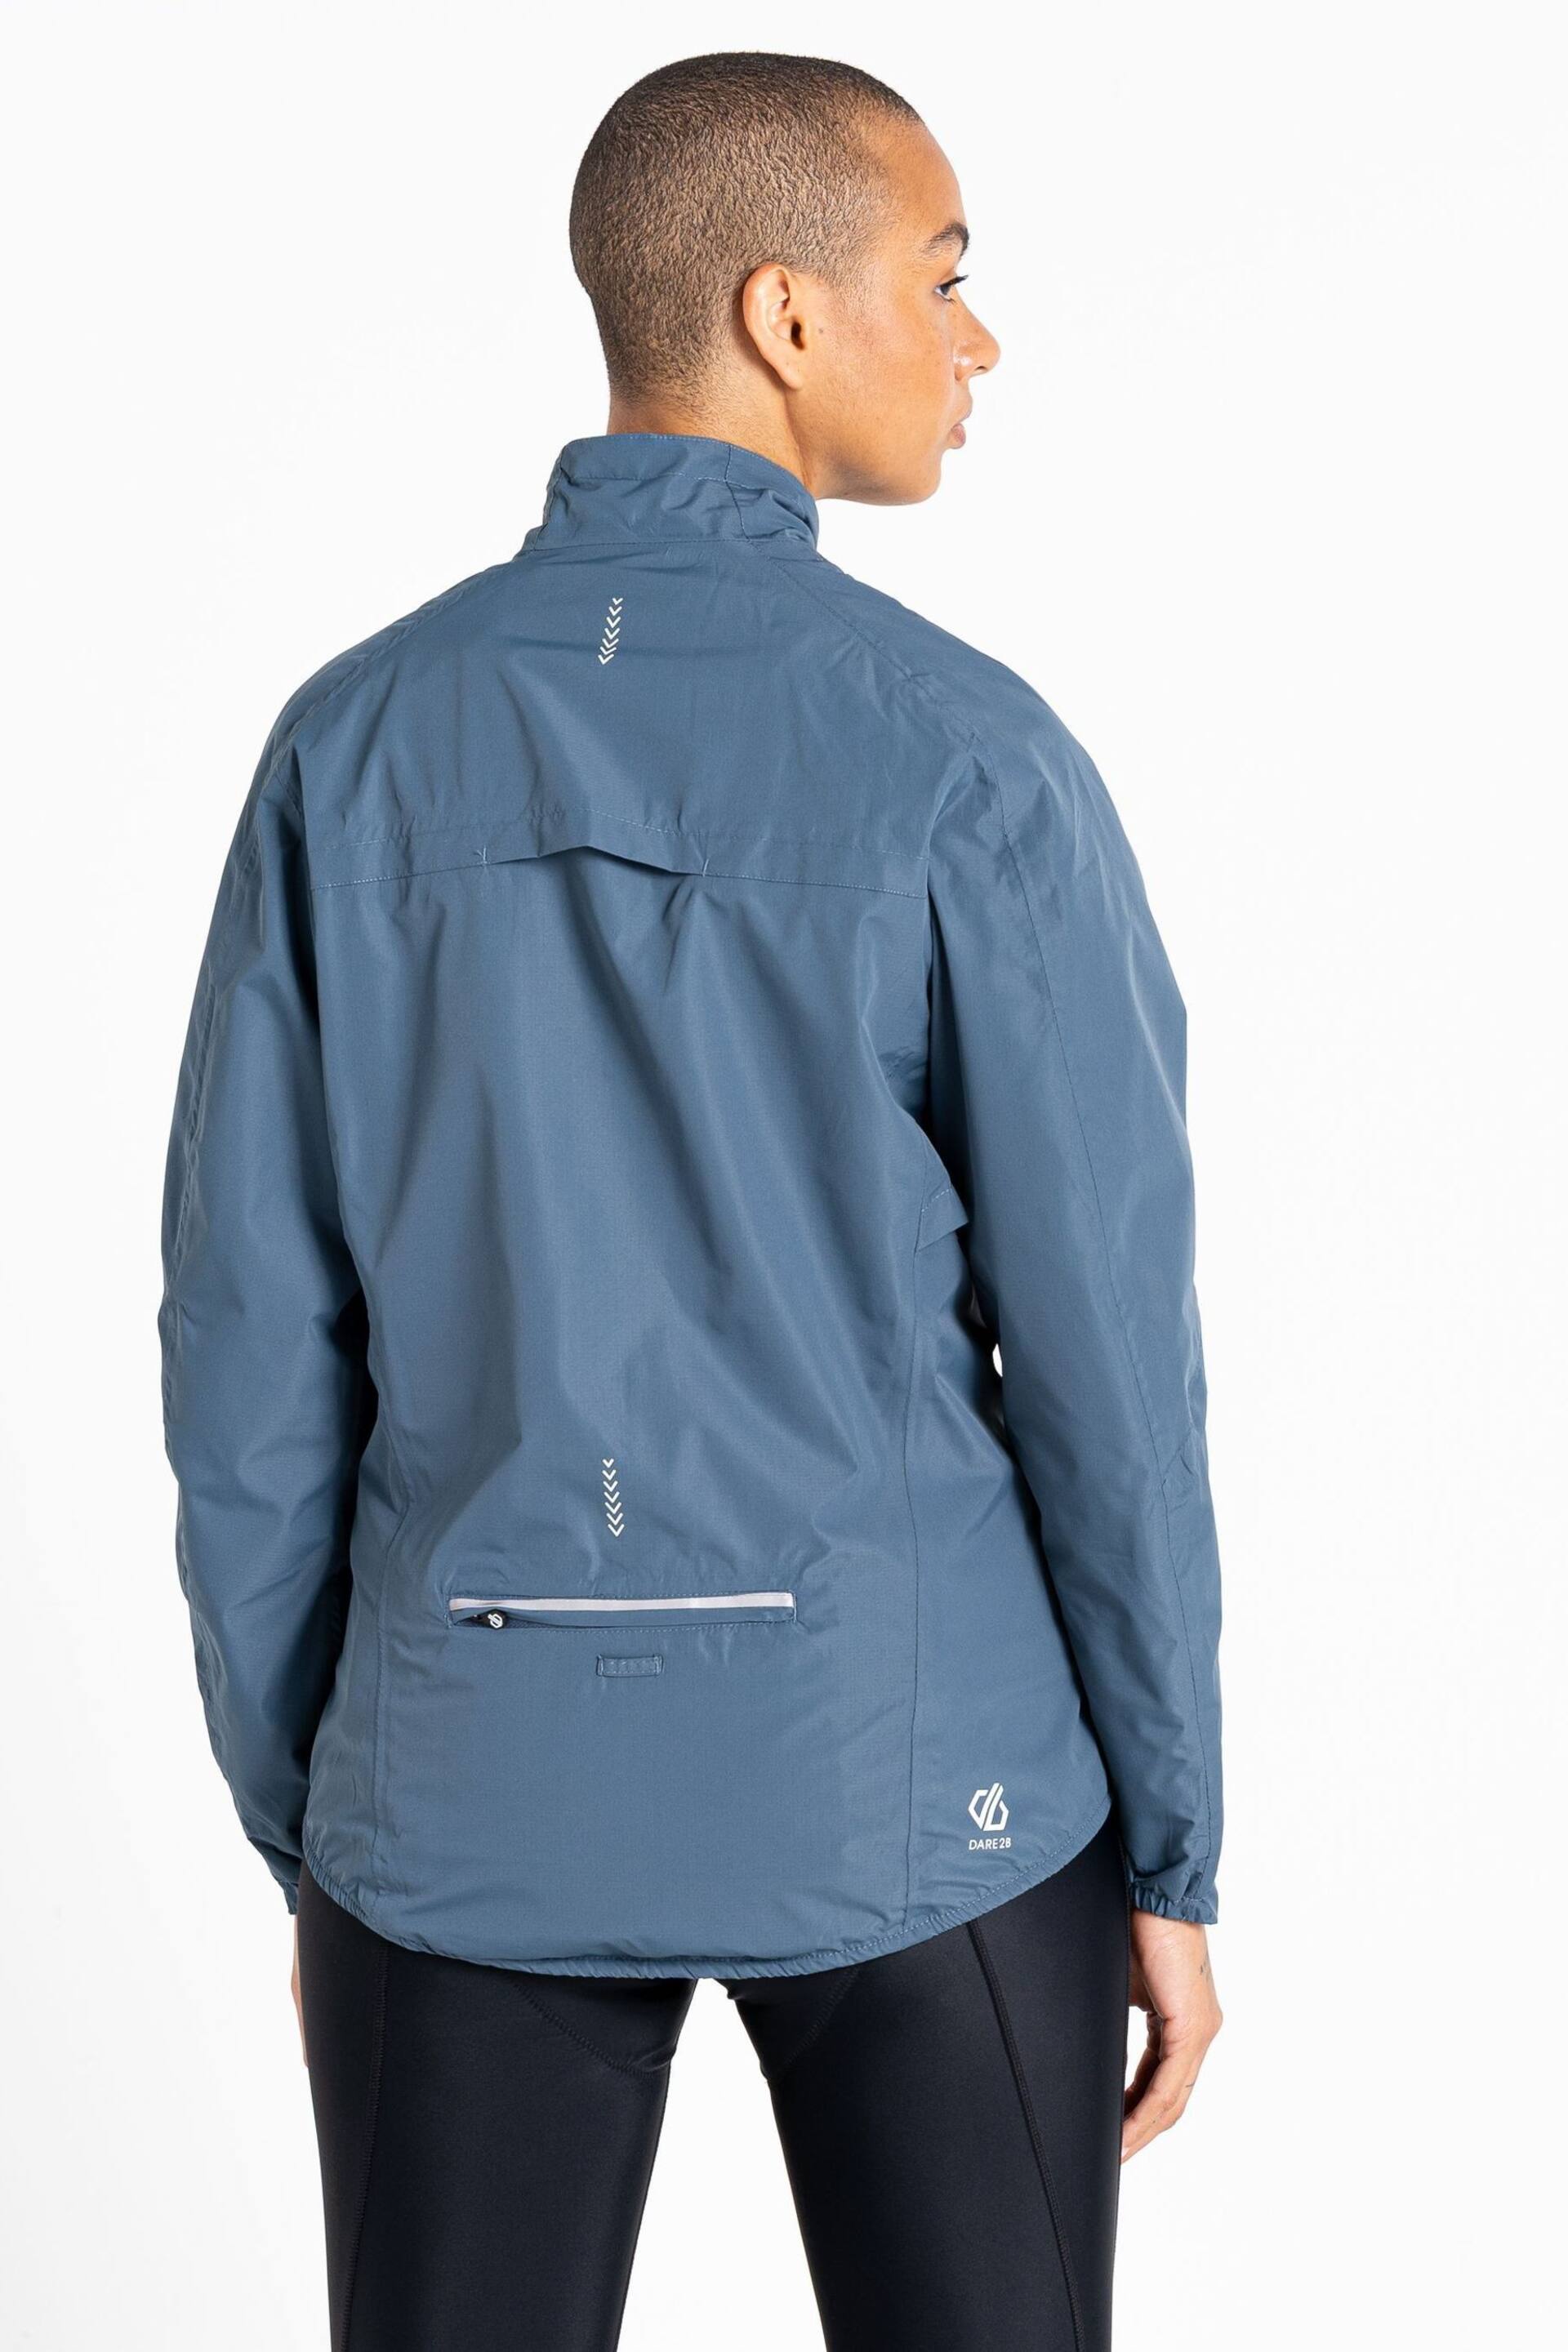 Dare 2b Blue Mediant II Waterproof Jacket - Image 3 of 6